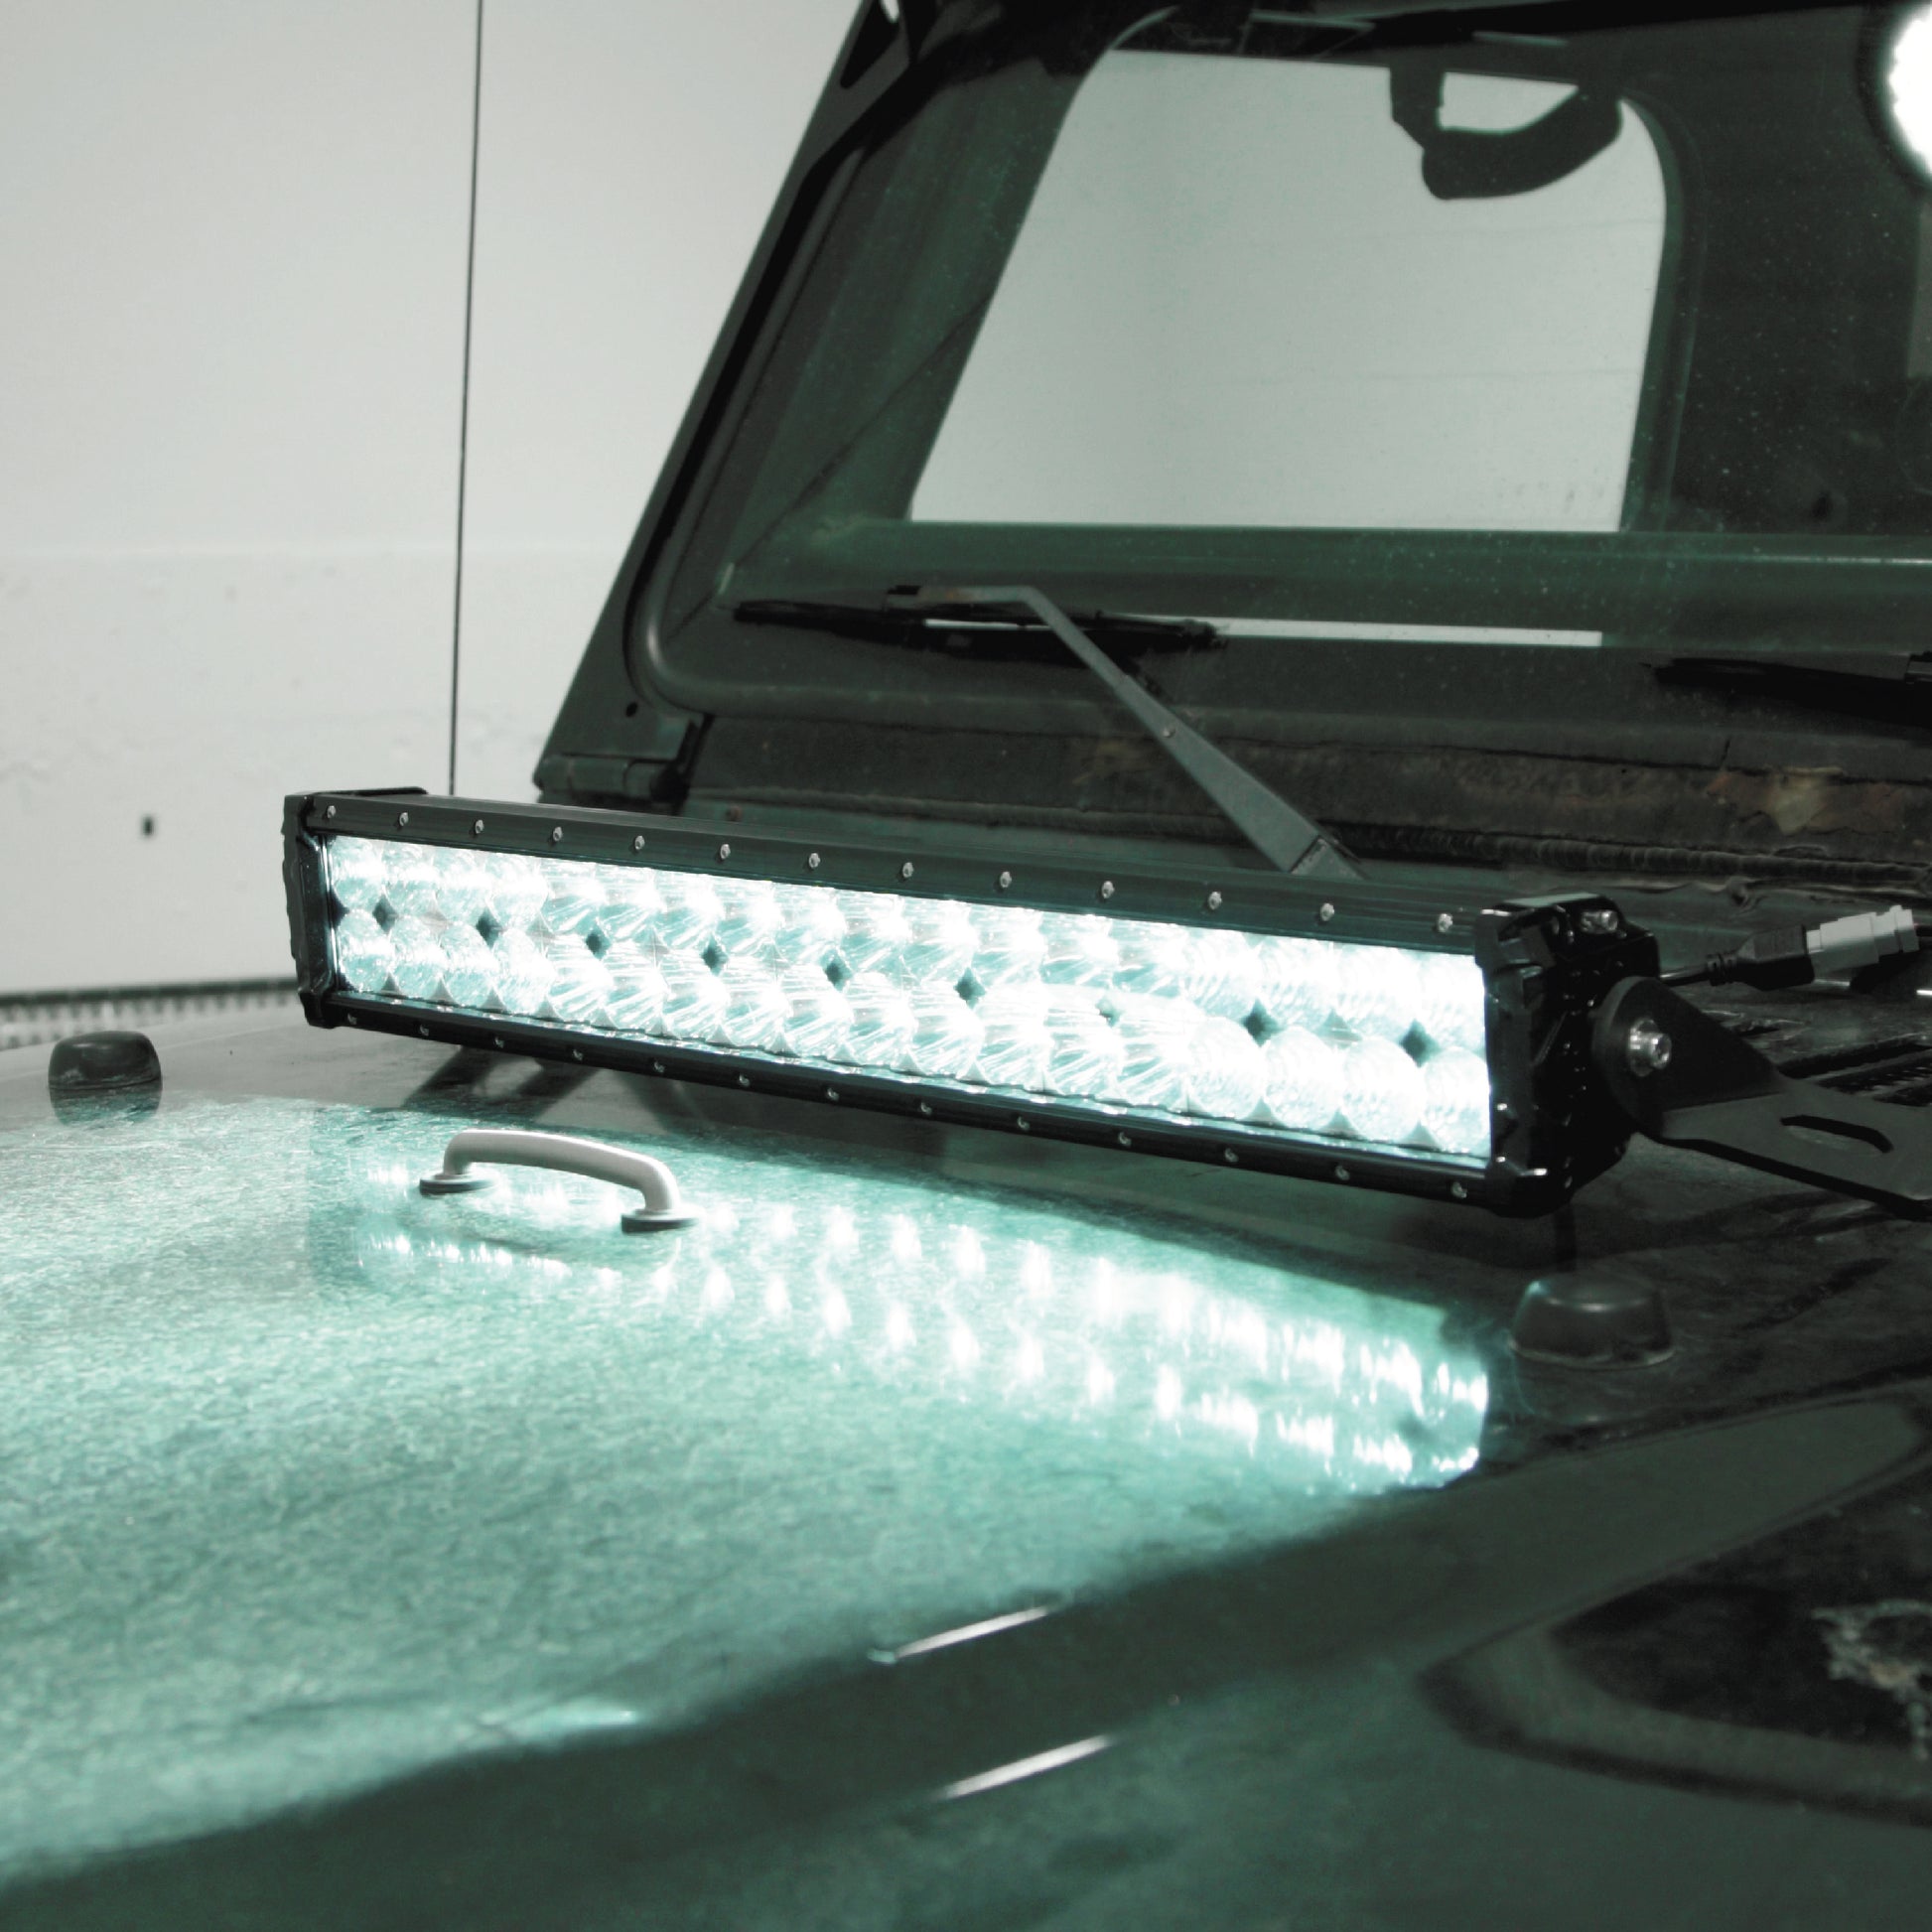 Alpena TrekTec LED Light Bar S22, 12V, Model 71067, Fit Type - Universal  for Cars, Trucks and SUVs 